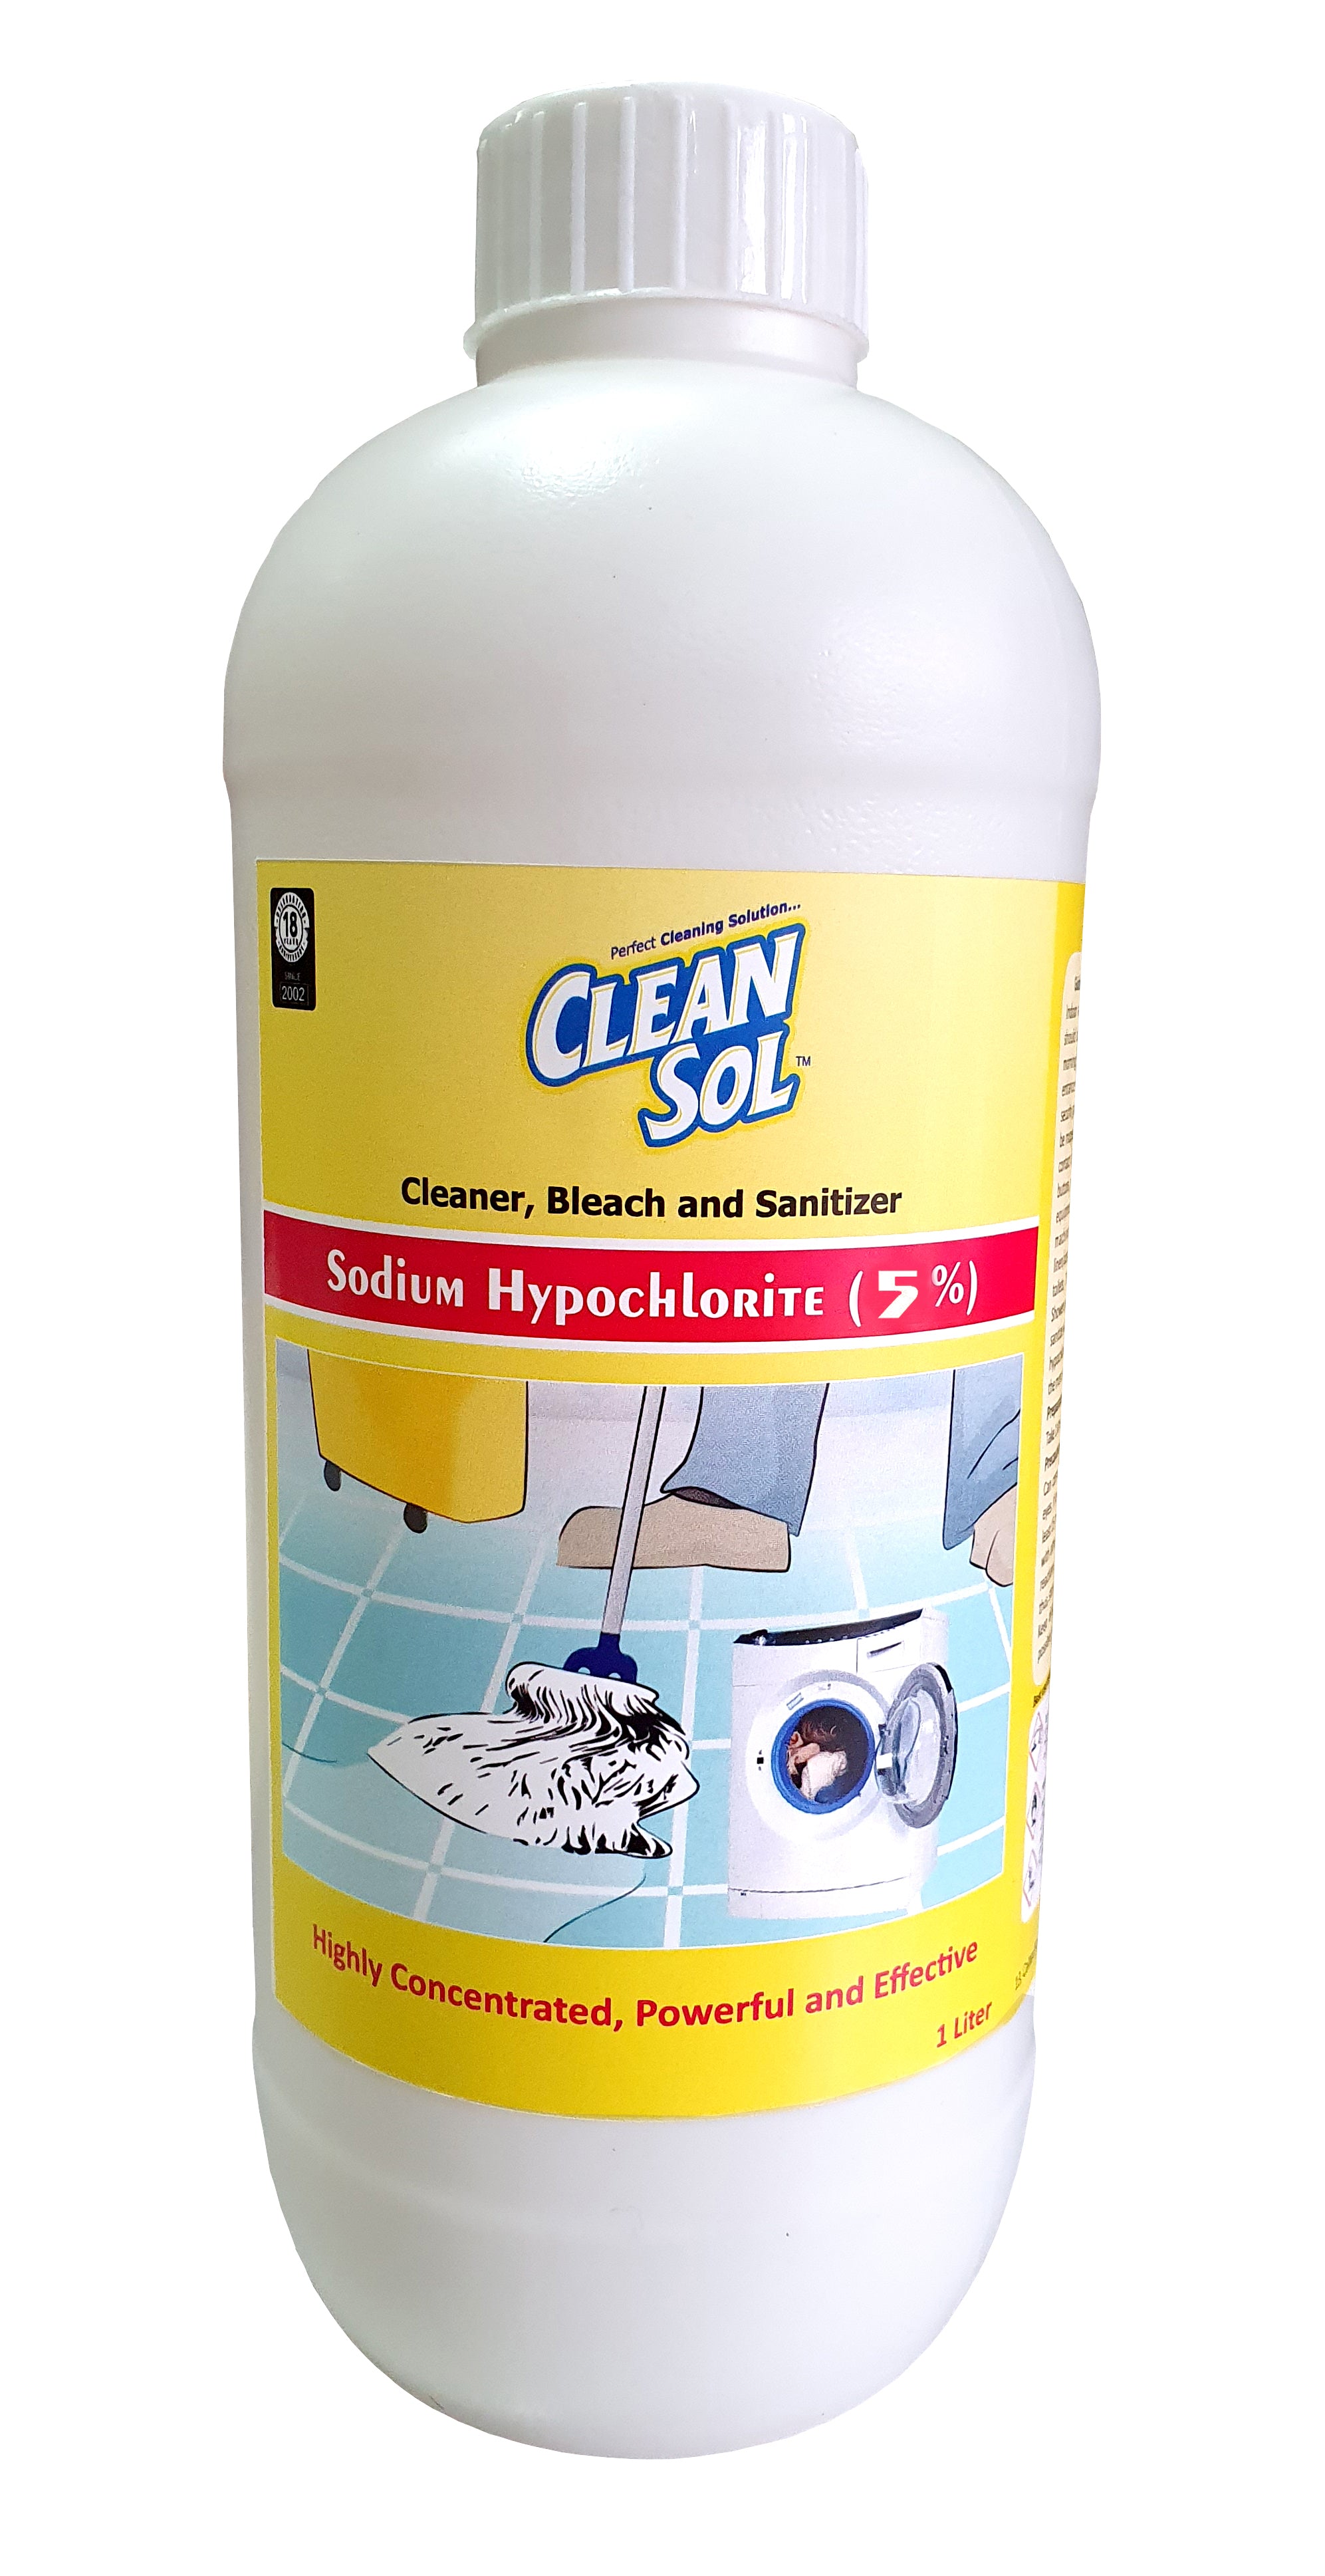 Cleansol Sodium Hypochlorite 5% - Multipurpose Disinfectant Liquid